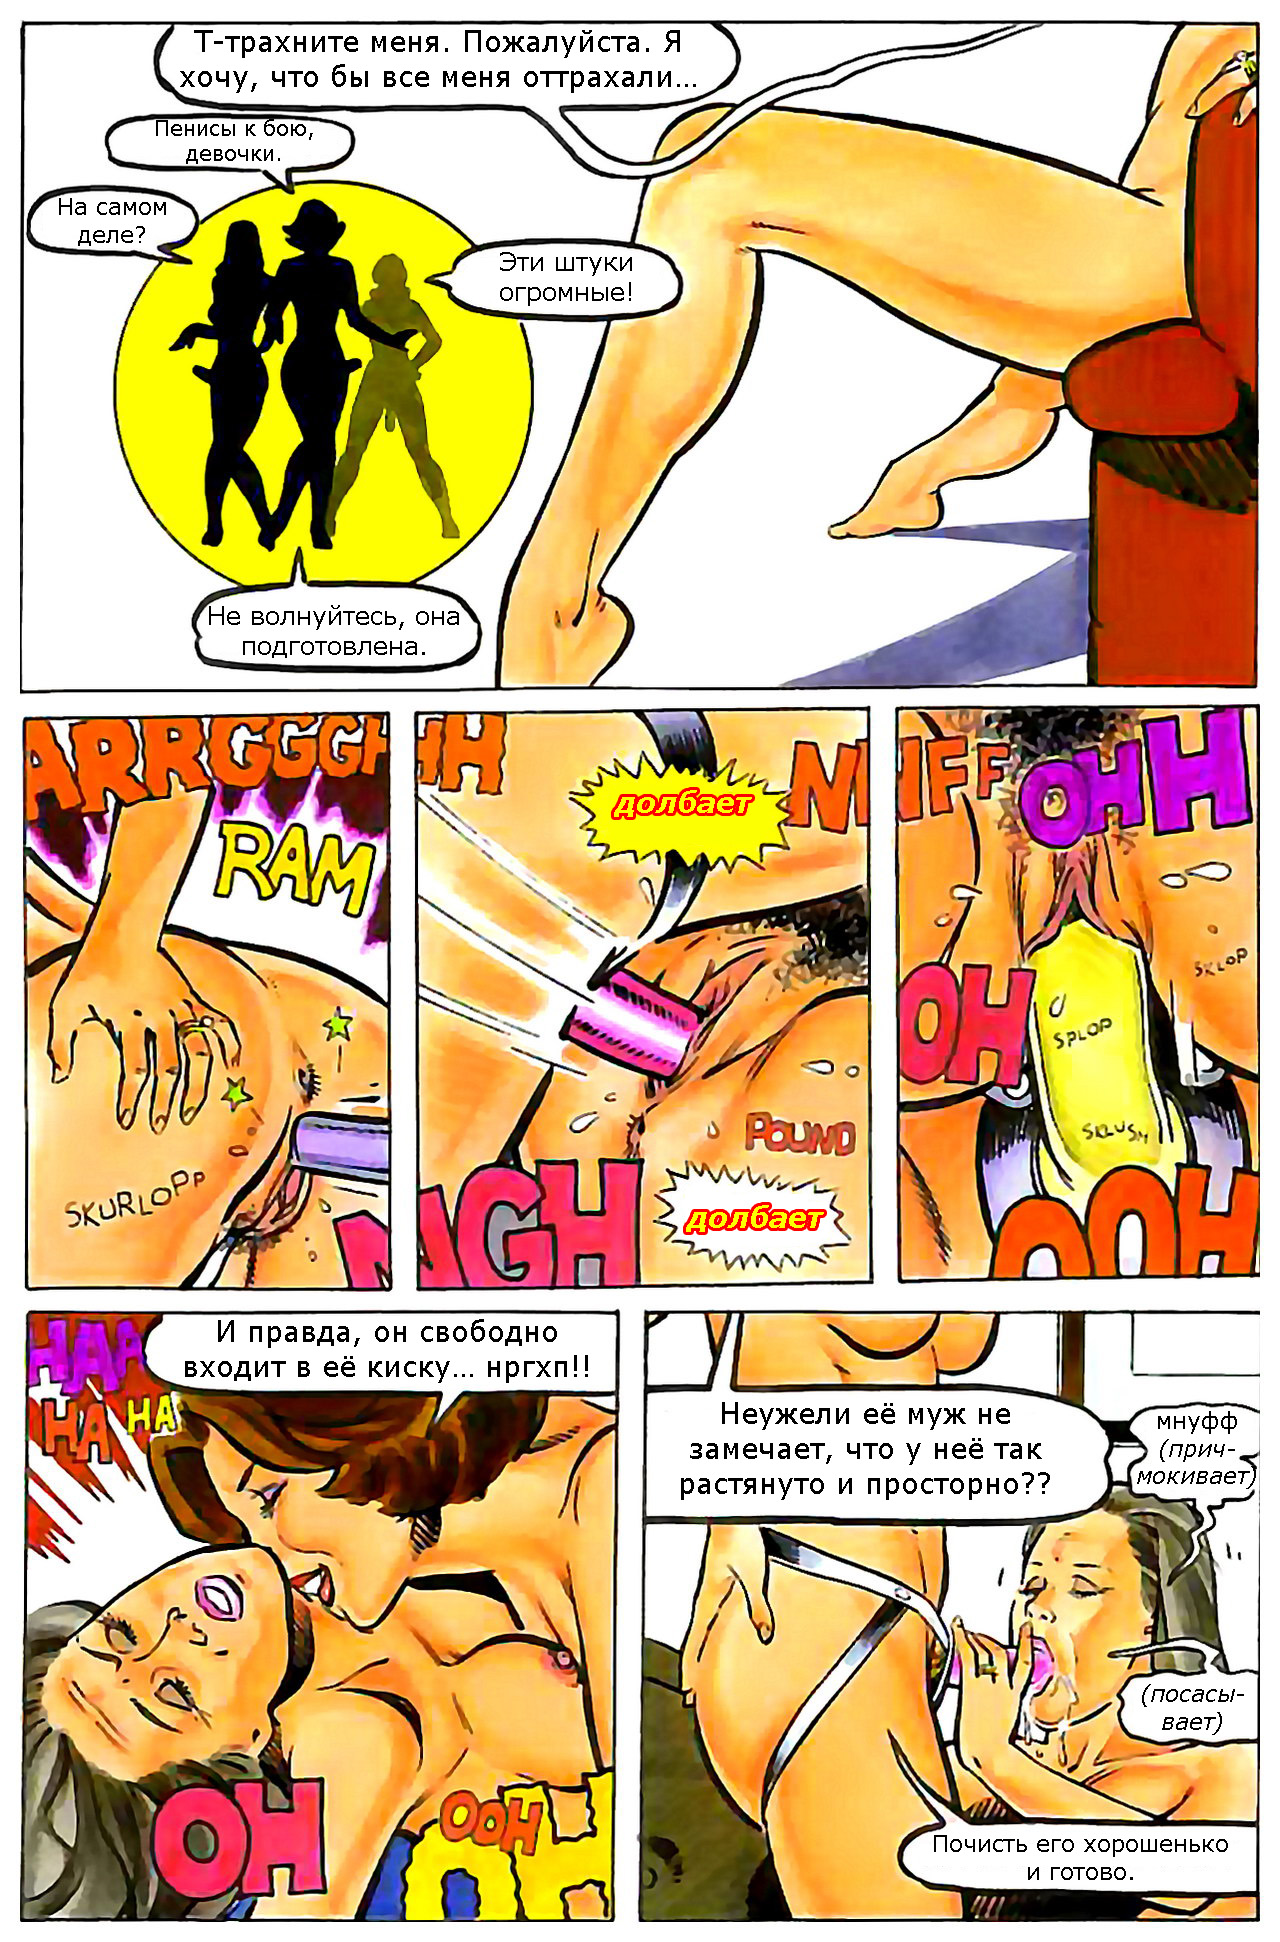 Порно комиксы игры домохозяек фото 105